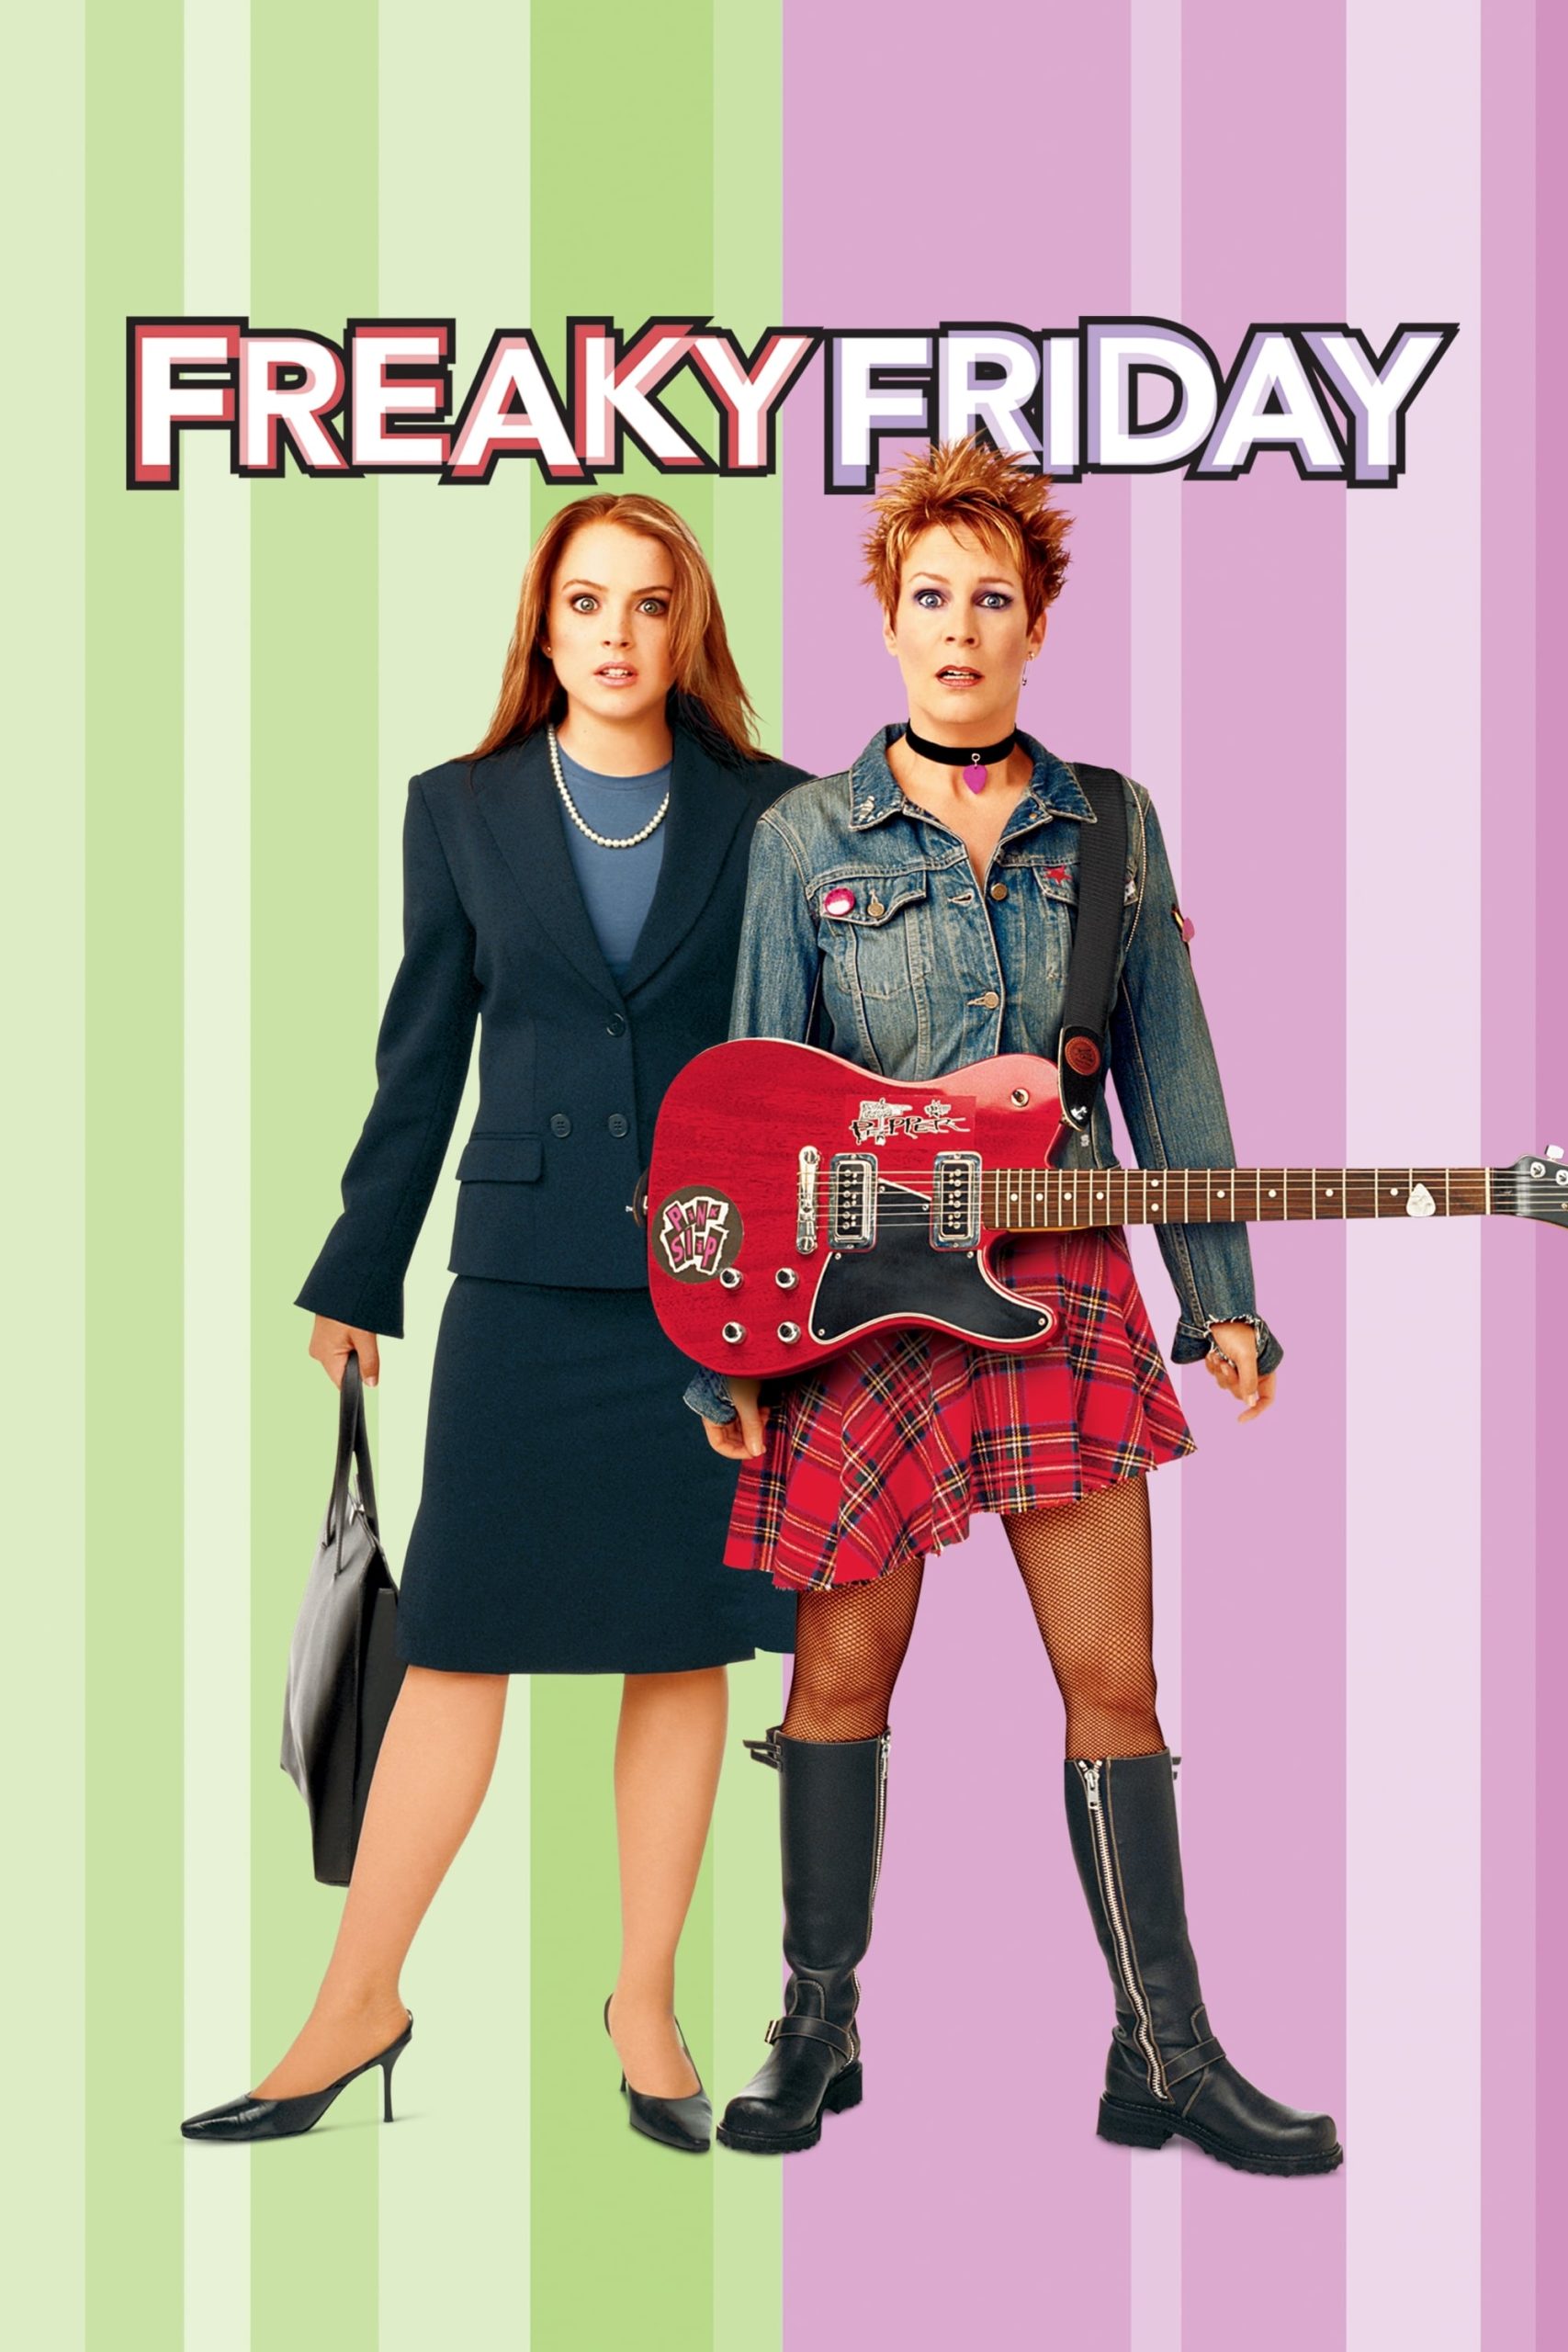 ดูหนังออนไลน์ Freaky Friday ศุกร์สยอง สองรุ่นสลับร่าง